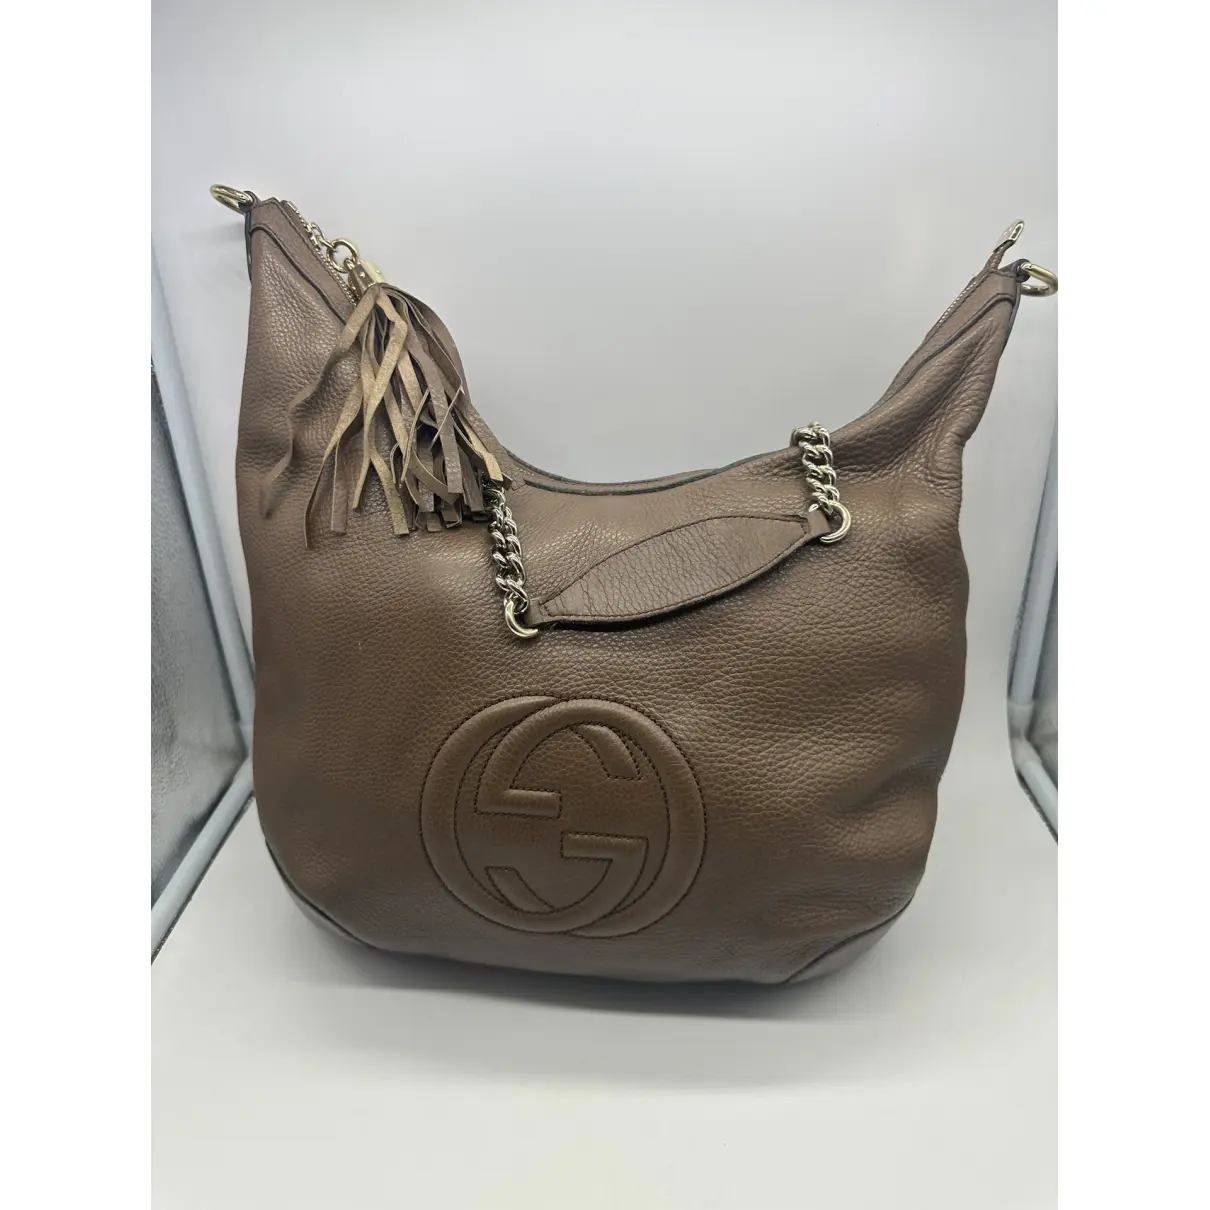 Buy Gucci Soho Hobo leather handbag online